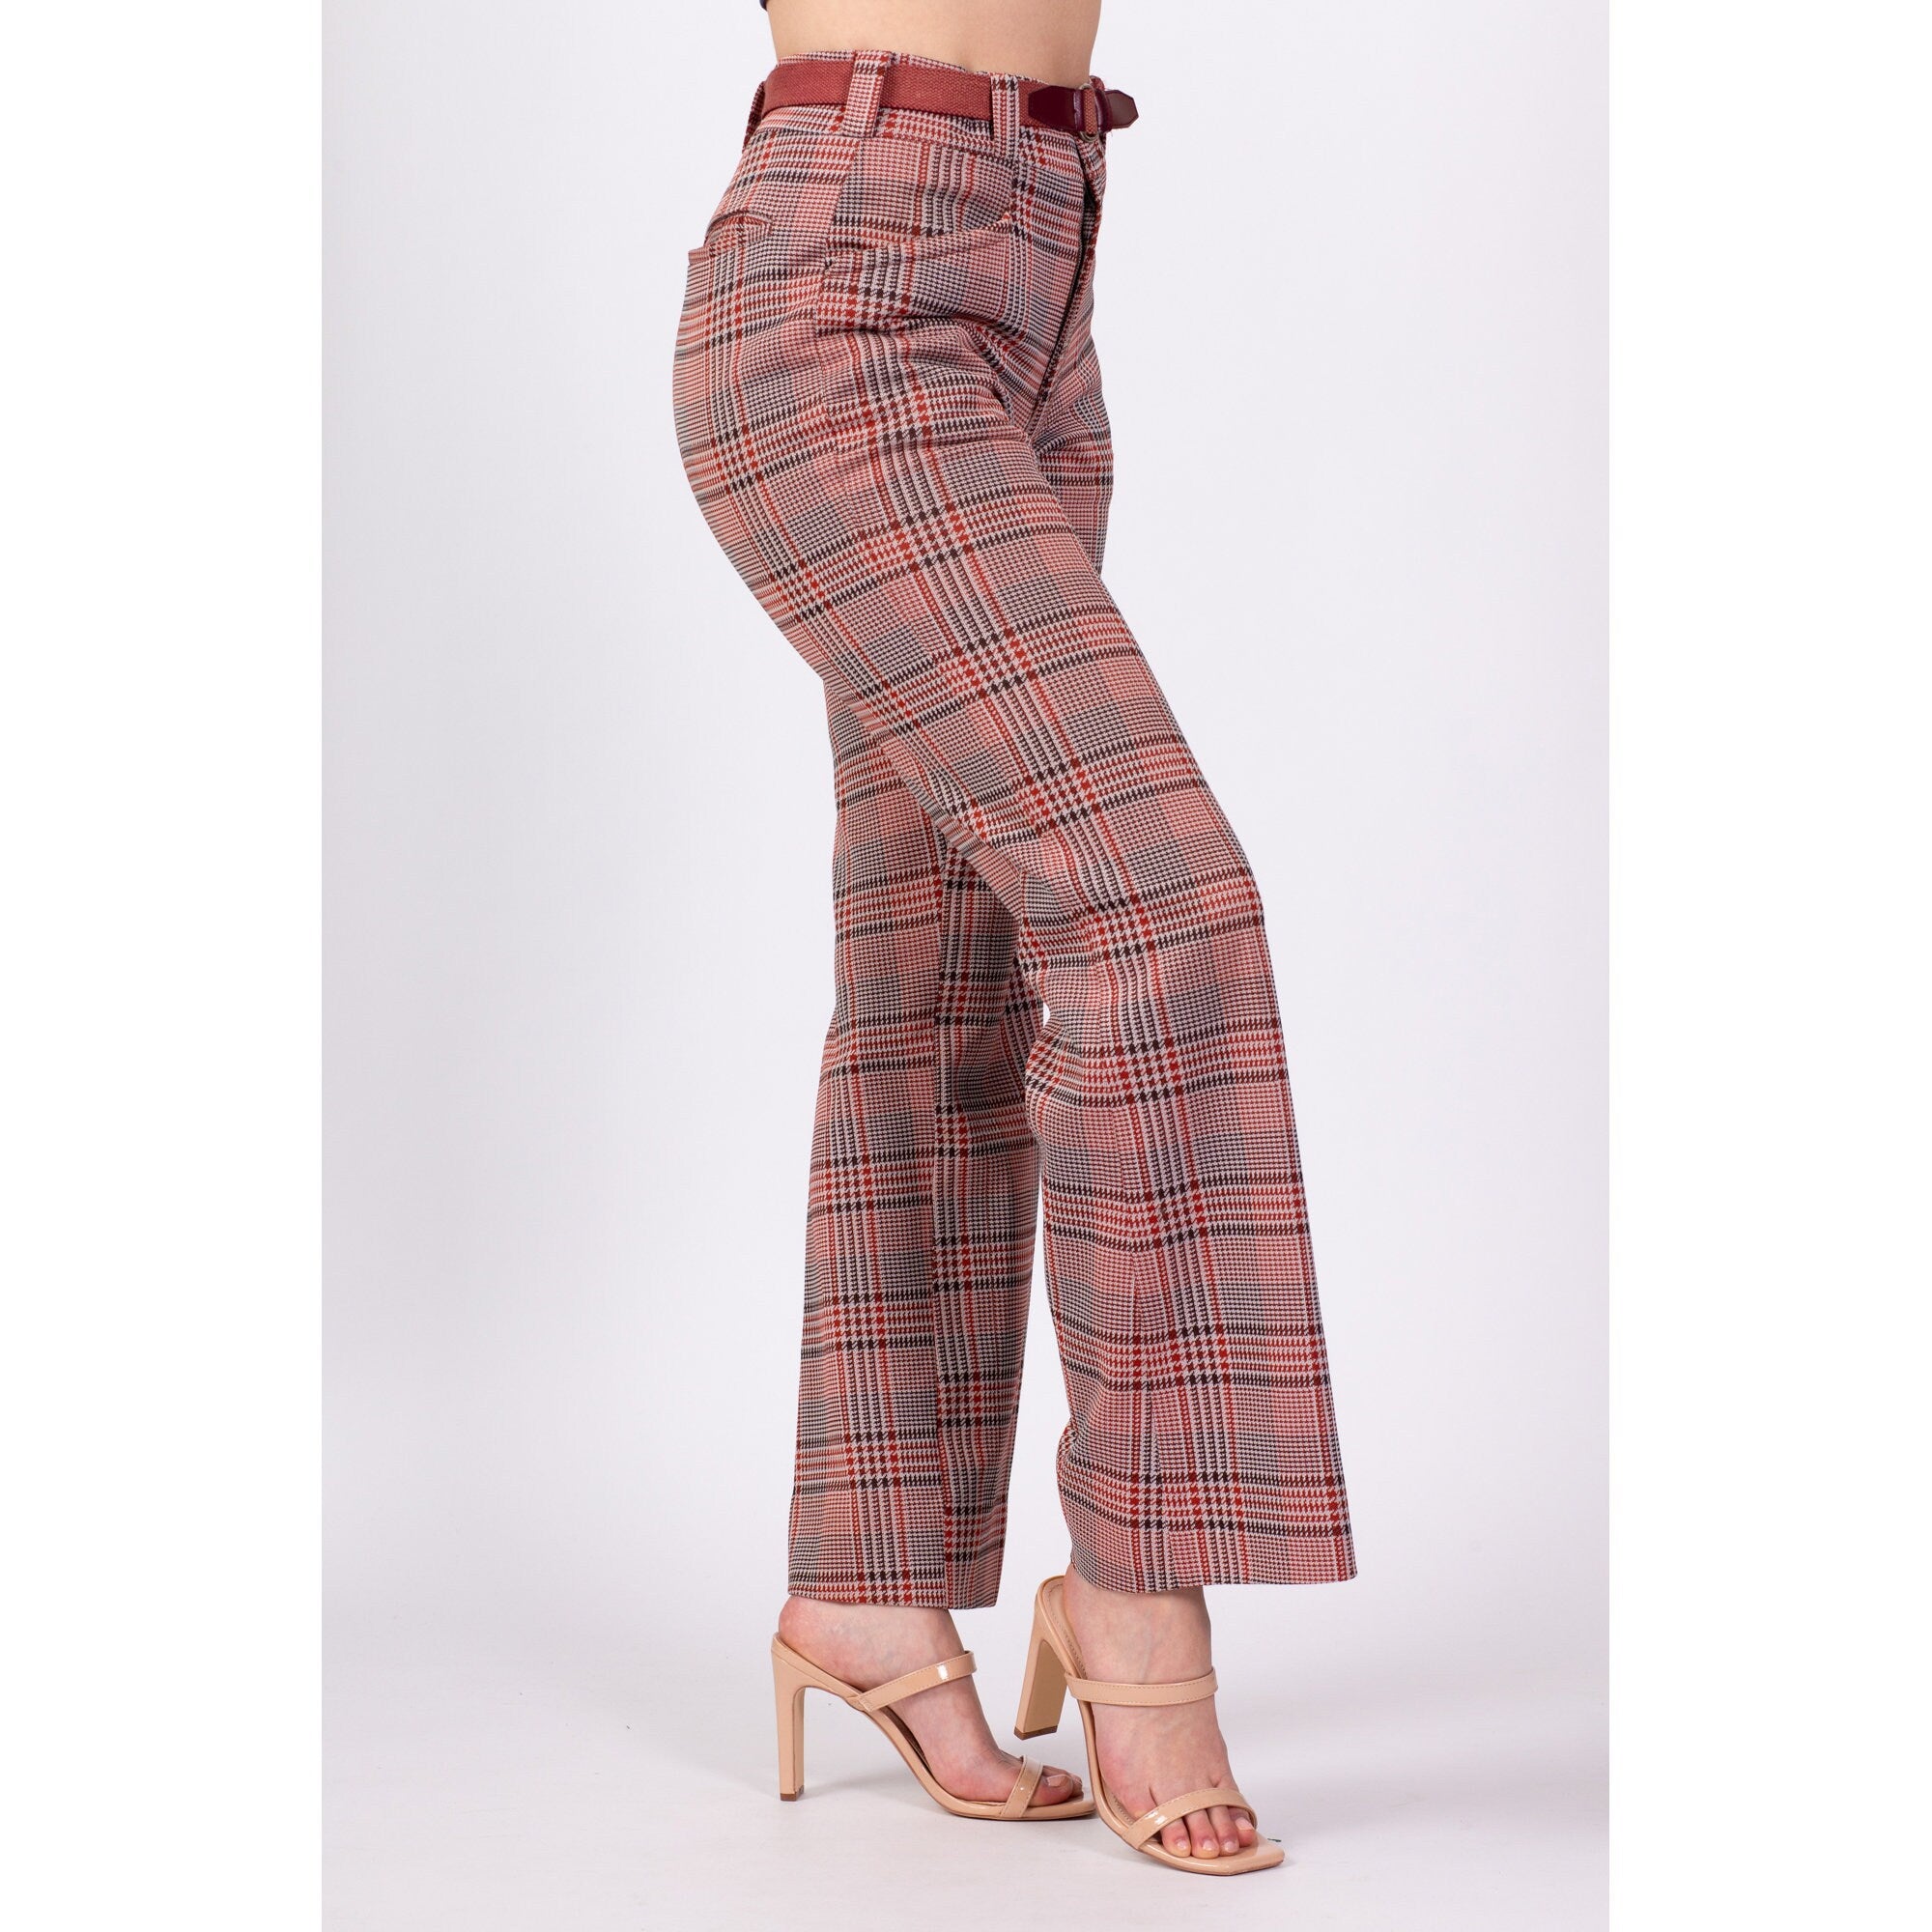 Buy Women Grey Check Formal Slim Fit Trousers Online - 962190 | Van Heusen